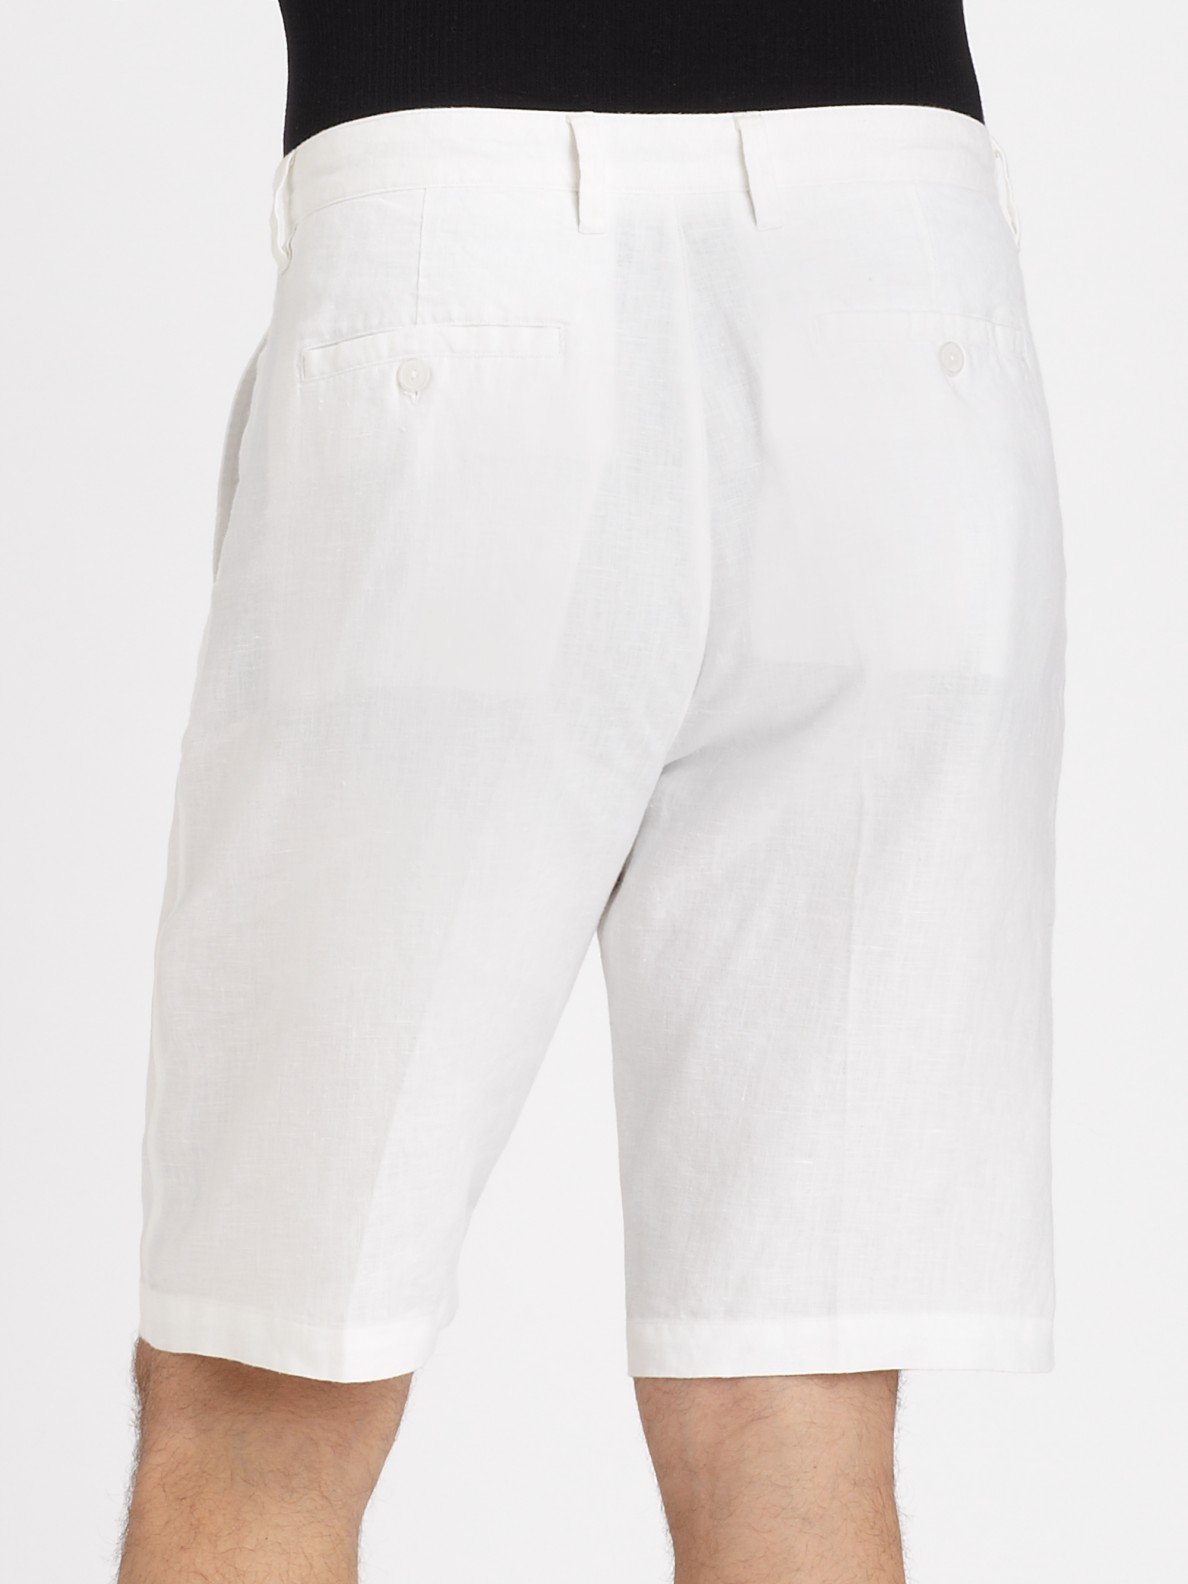 Saks Fifth Avenue White Linen Shorts for Men - Lyst